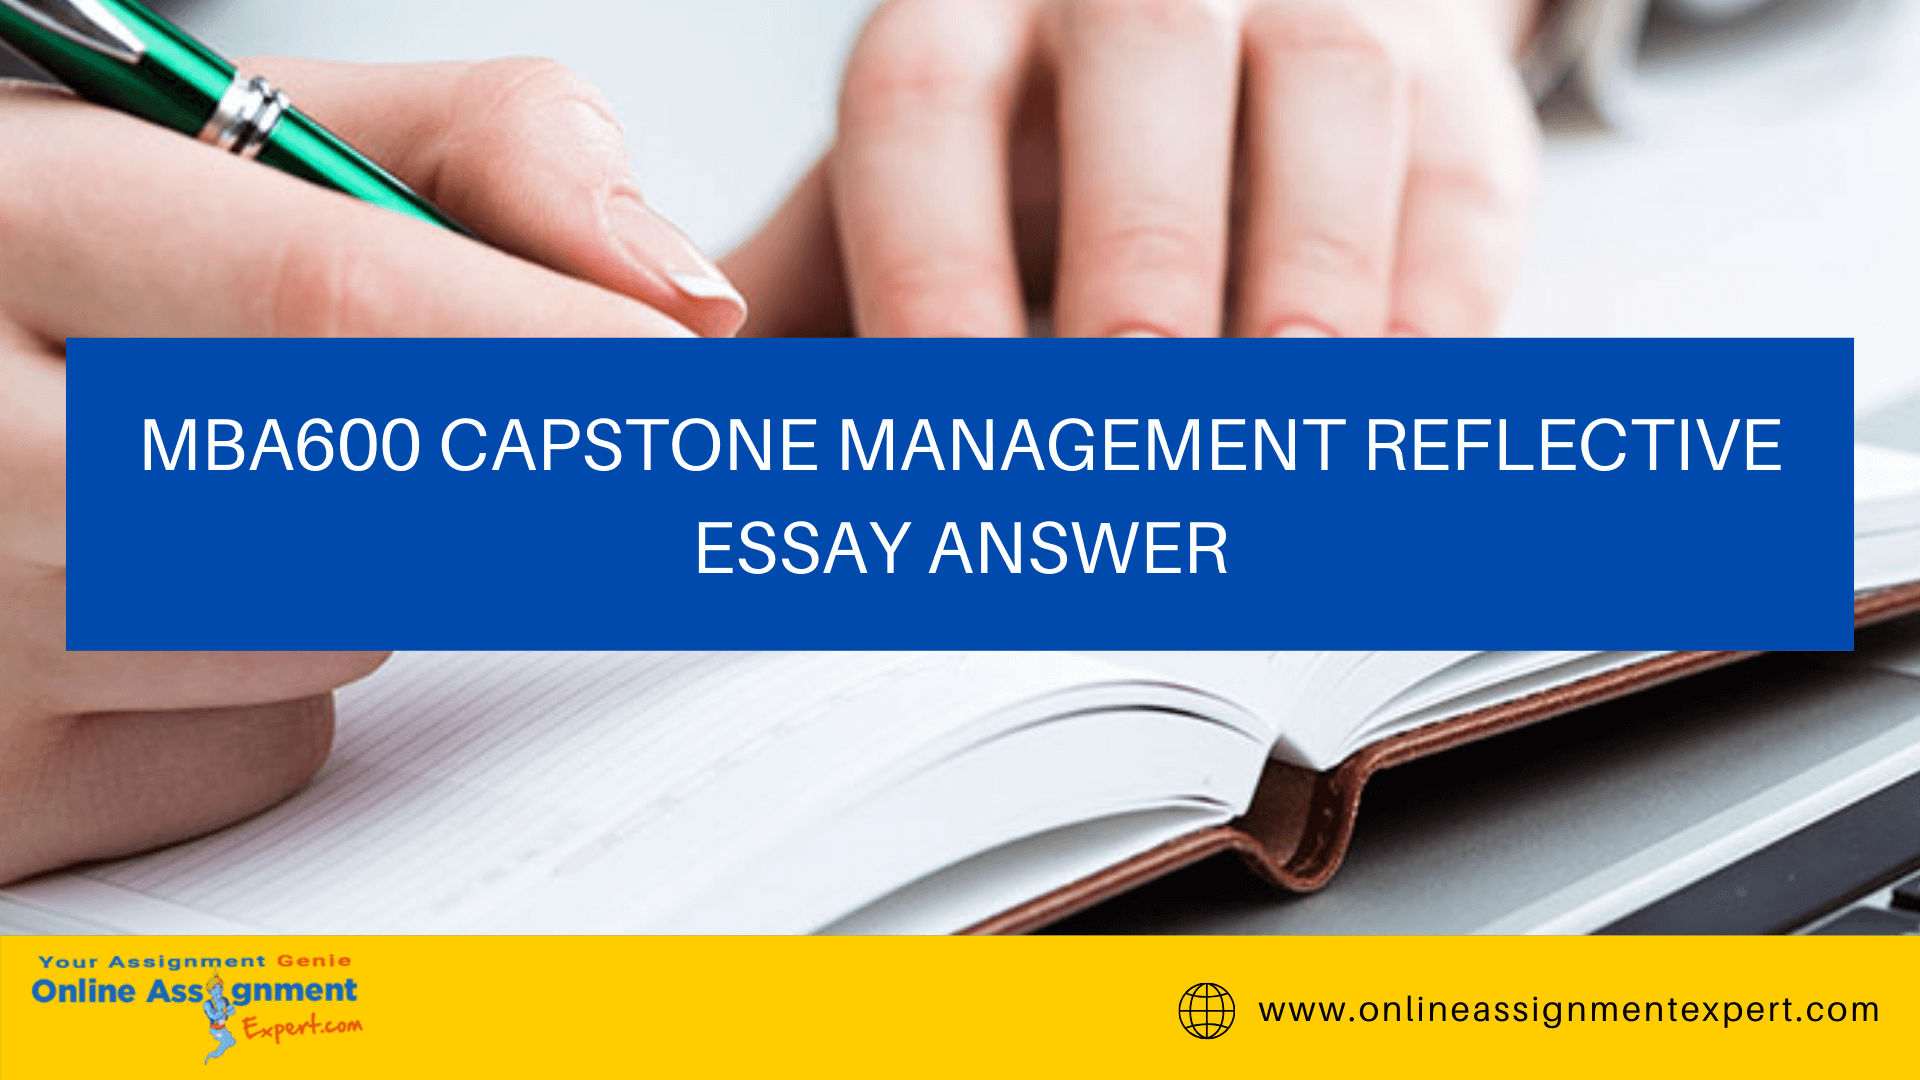 MBA600 Capstone Management Reflective Essay Answer